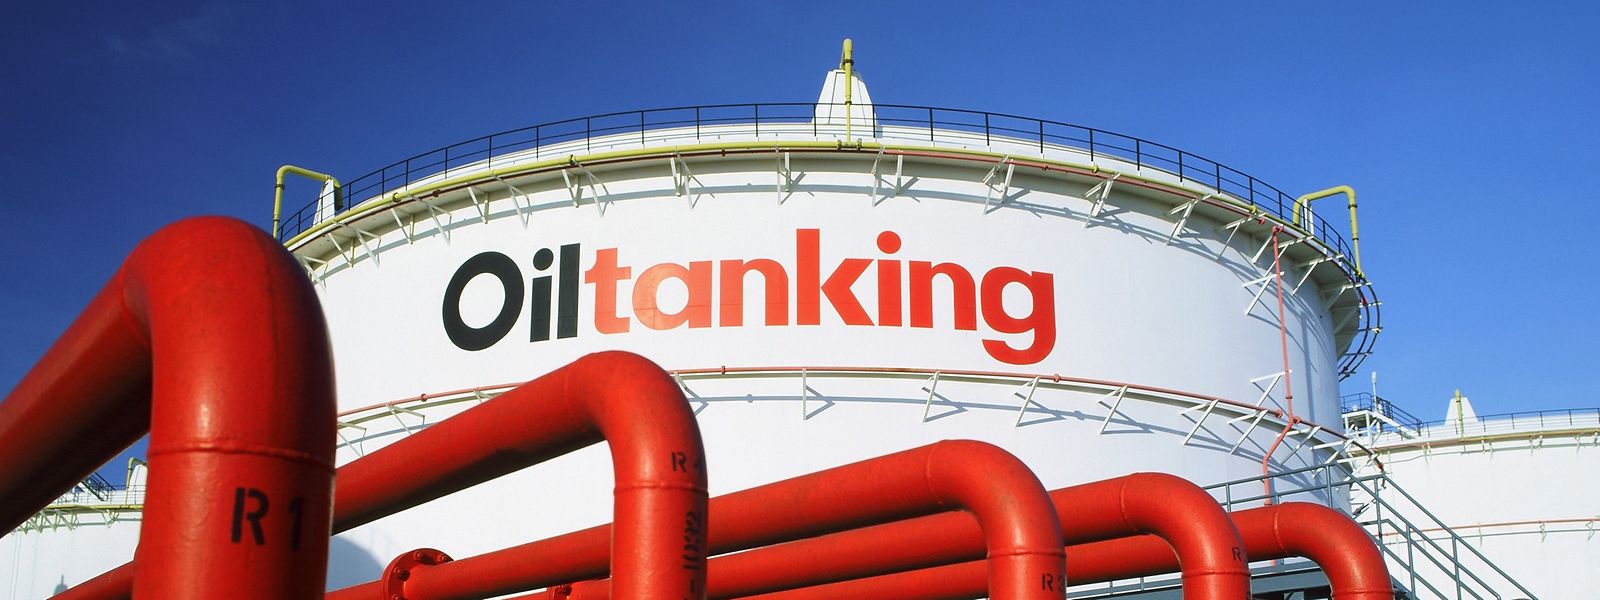 Oiltanking - das Schwesterunternehmen Skytanking ist an Luxfuel beteiligt - wurde kürzlich Opfer eines Hackerangriffs. Deutschlandweit waren die Betankungsanlagen dadurch lahmgelegt.